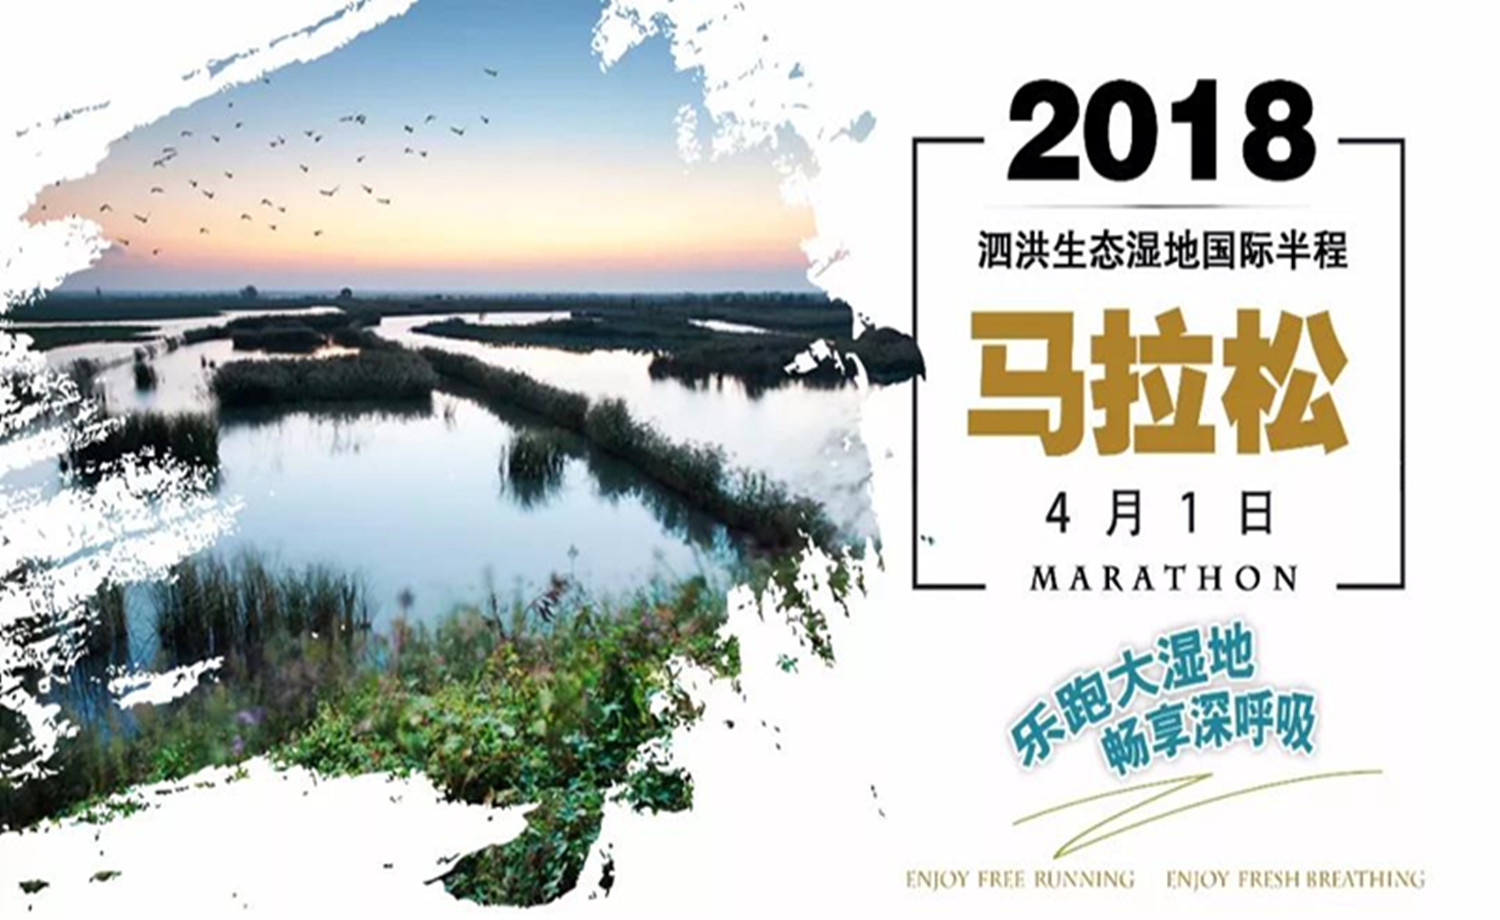 2018泗洪生态湿地国际半程马拉松